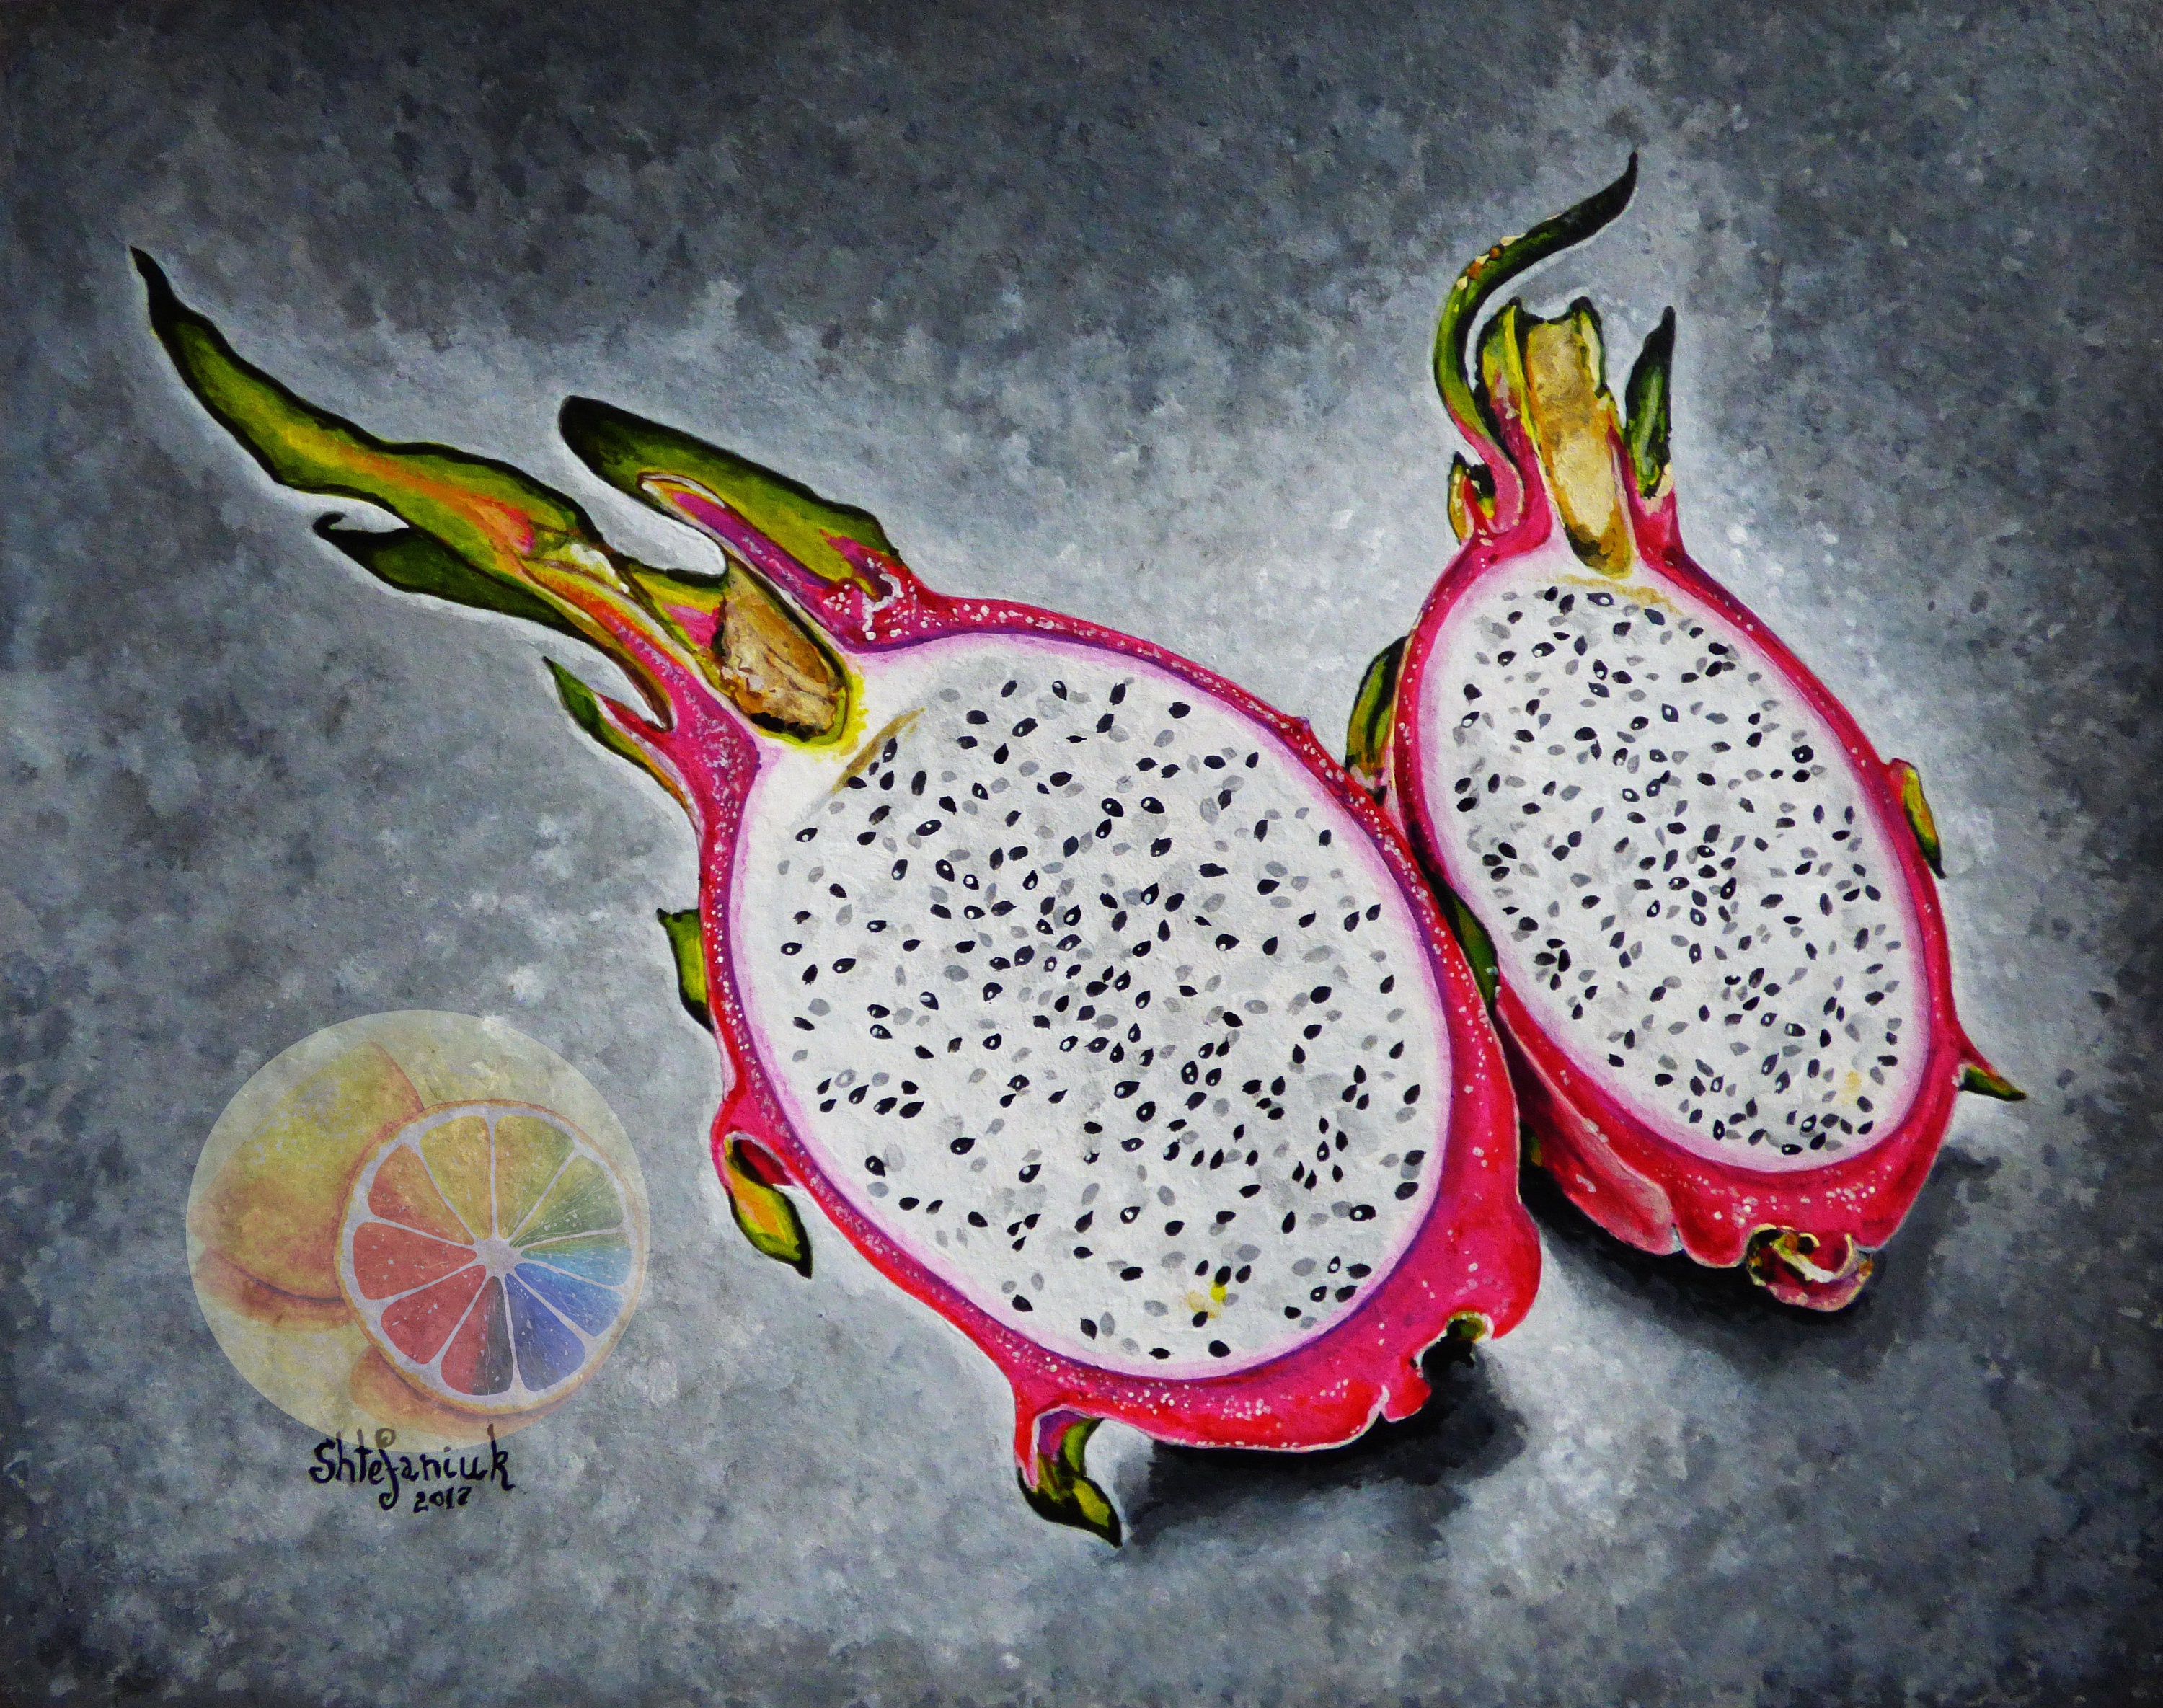 Drachen-Frucht-Malerei exotische Obst Pitaya Pitahaya 8 | Etsy